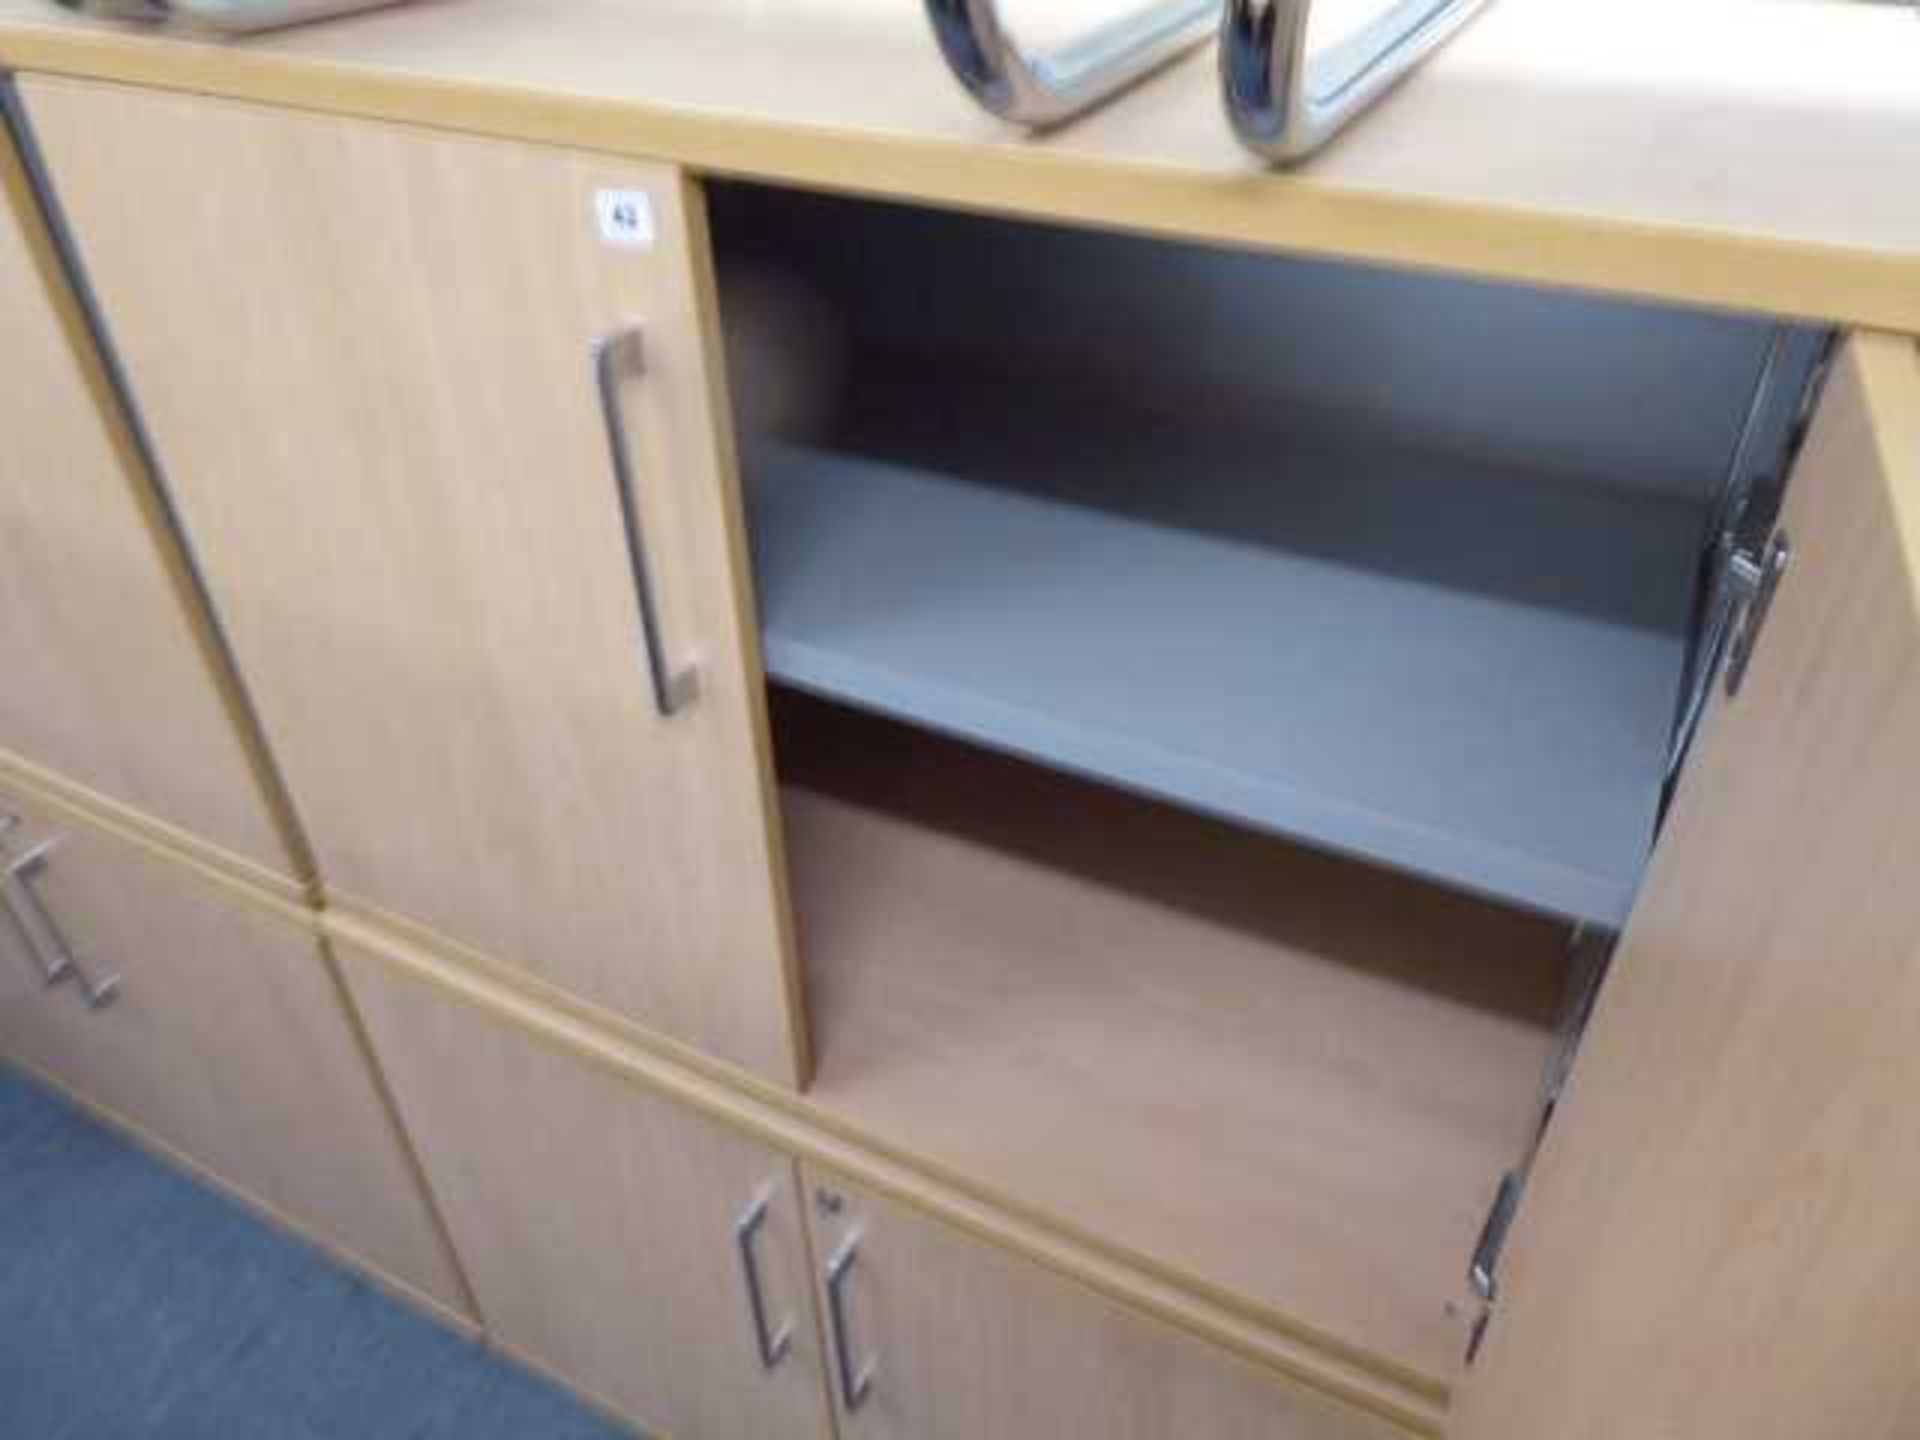 2 100cm low level beech 2 door cabinets - Image 2 of 2